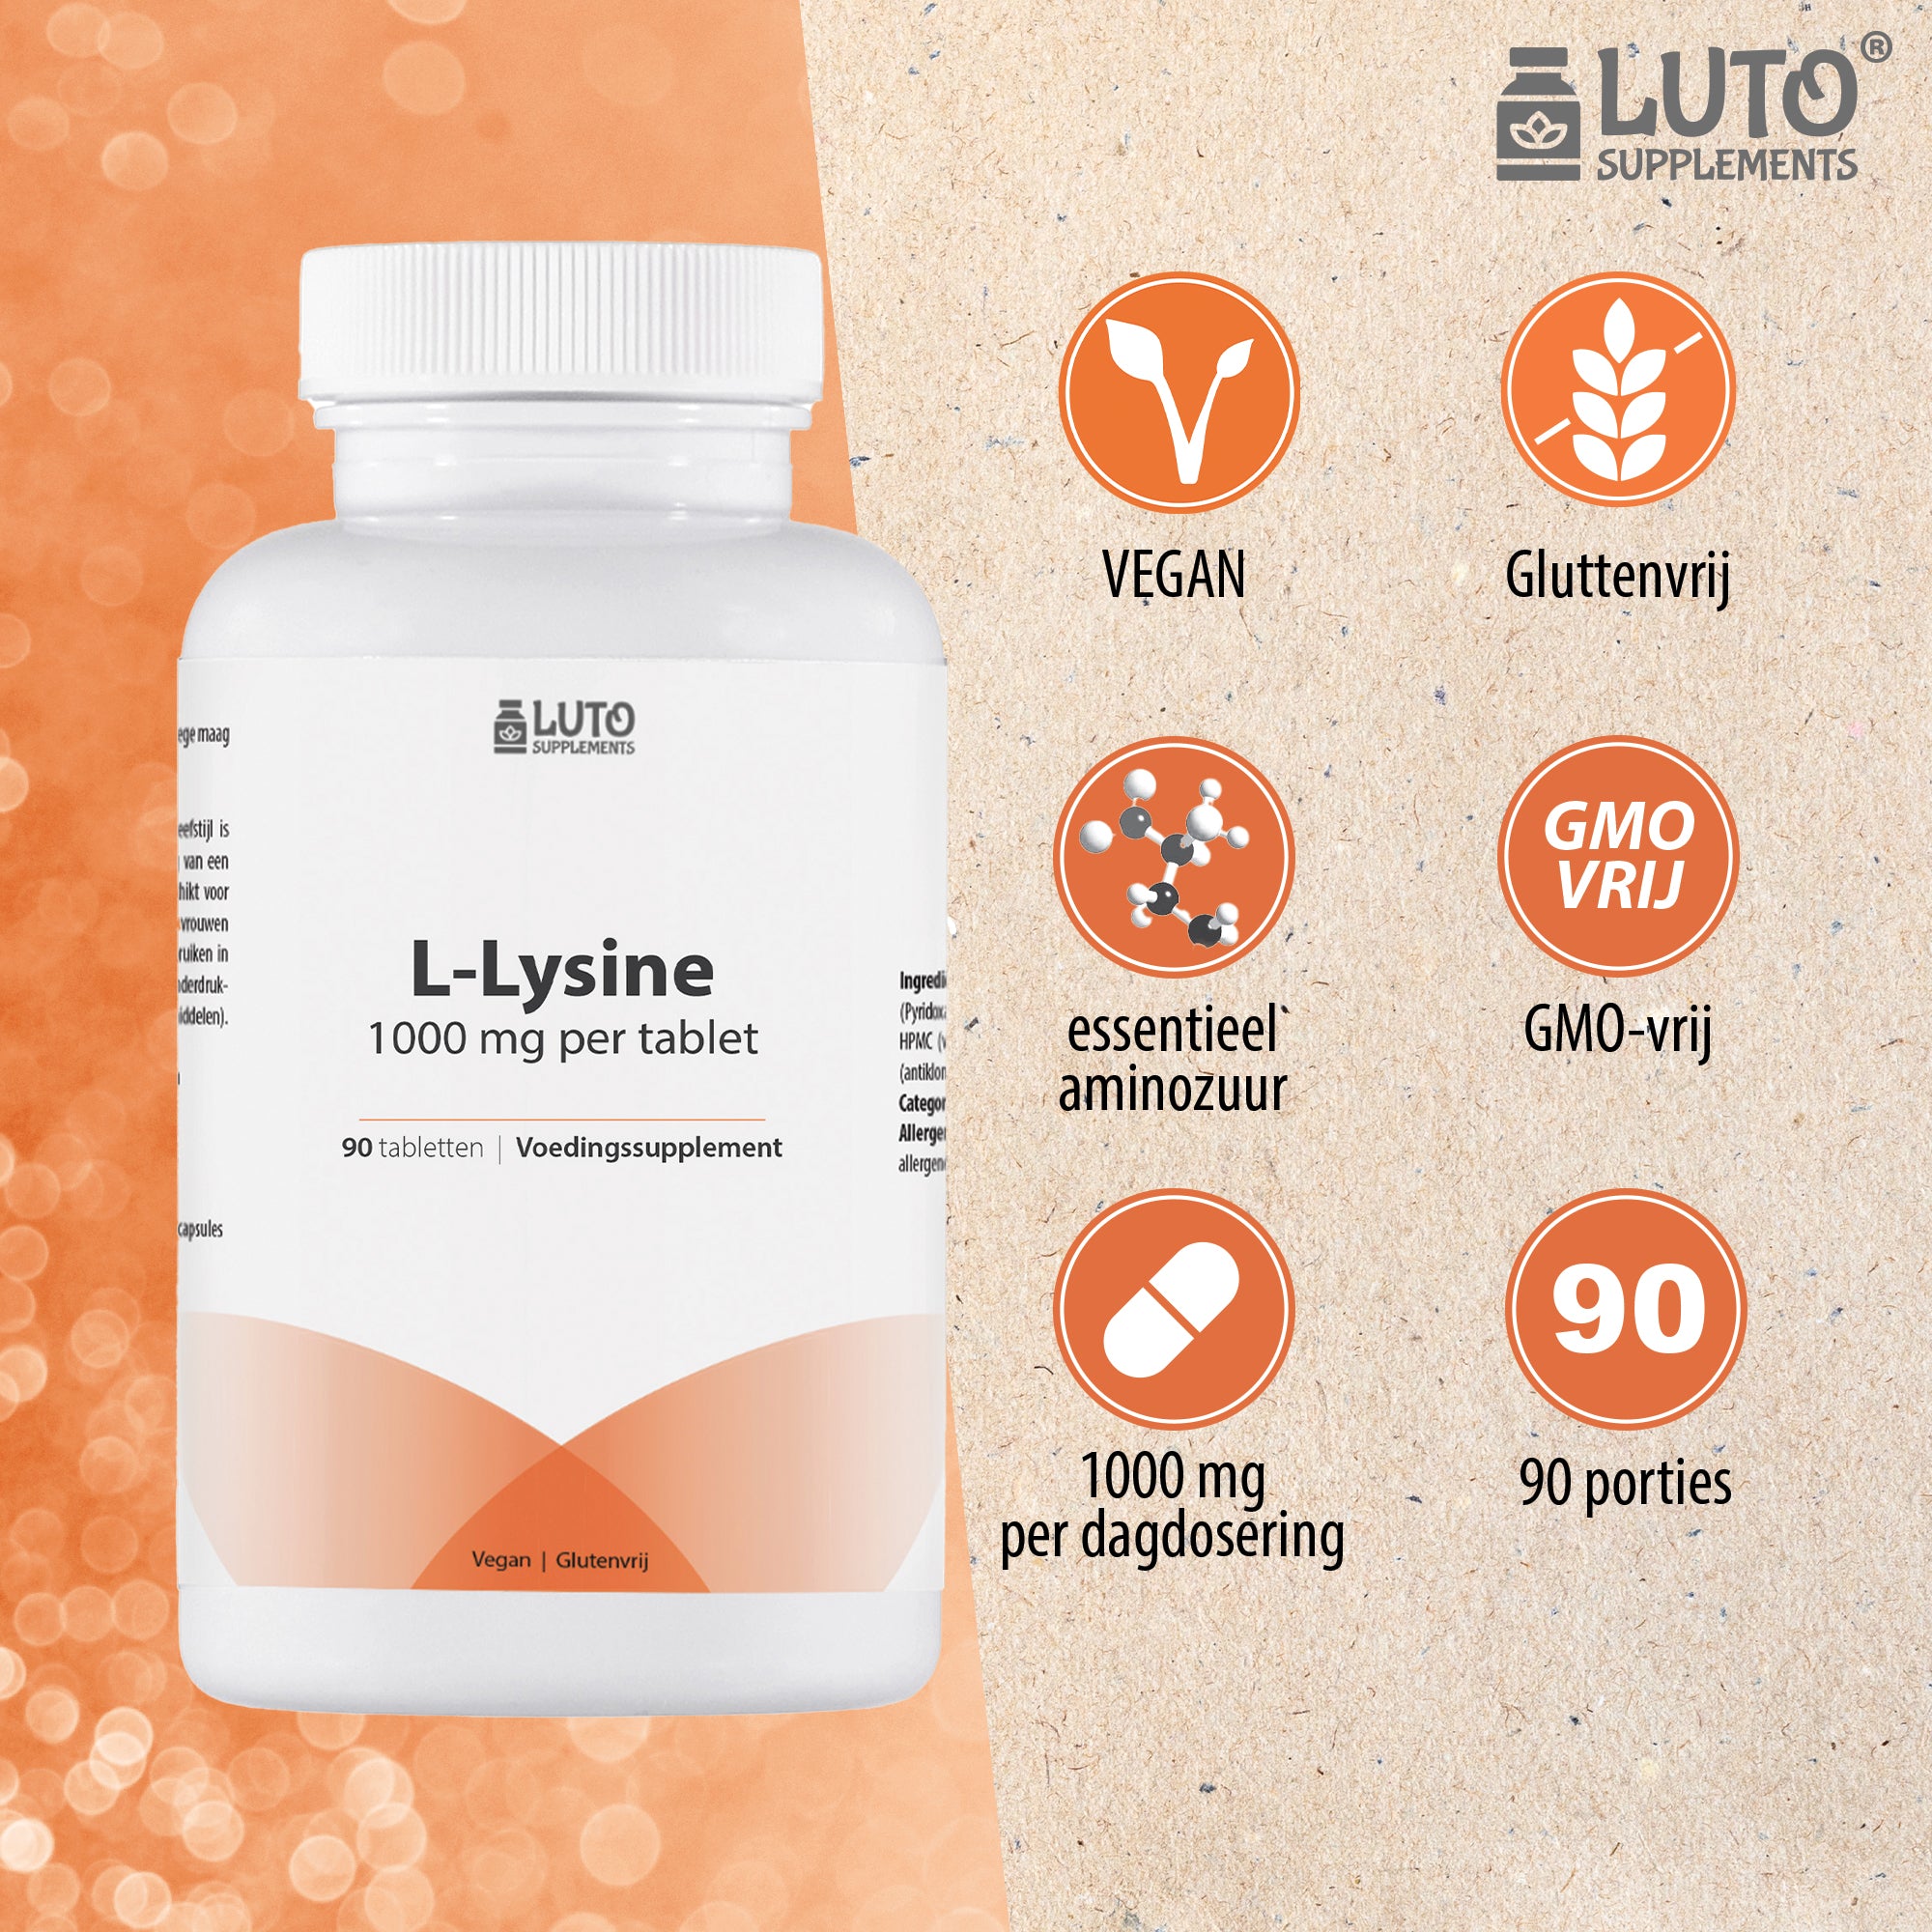 L-Lysine | 1000 mg per tablet | 90 tabletten | Zonder ongewenste toevoegingen | Hoog gedoseerd | Veganistisch | Luto Supplements